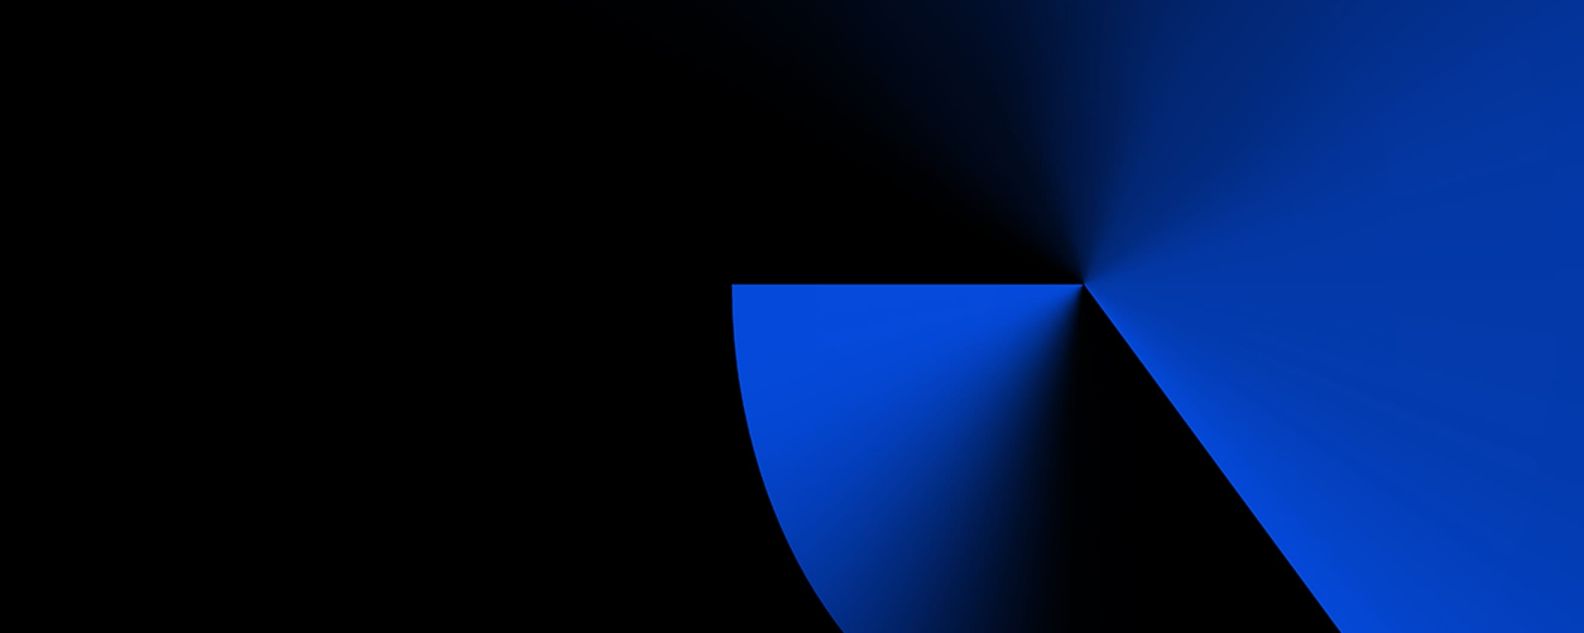 Formas  azuis geométricas em um fundo preto